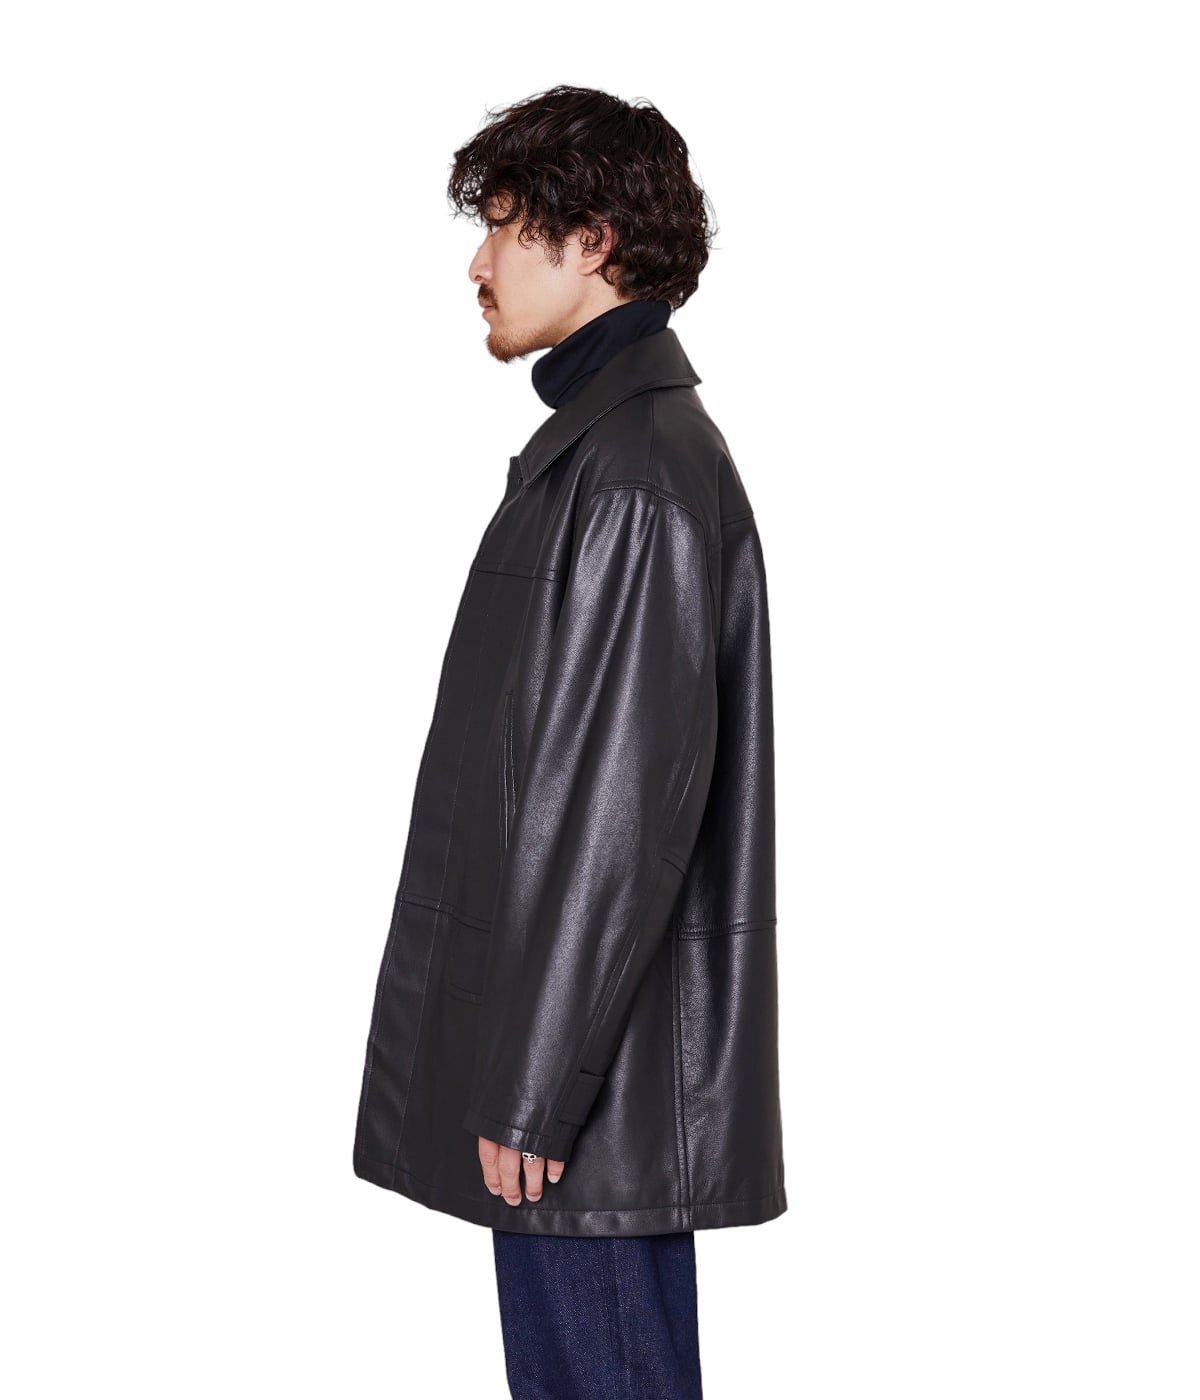 【新品未使用】lamb leather jacket 黒  Mサイズ